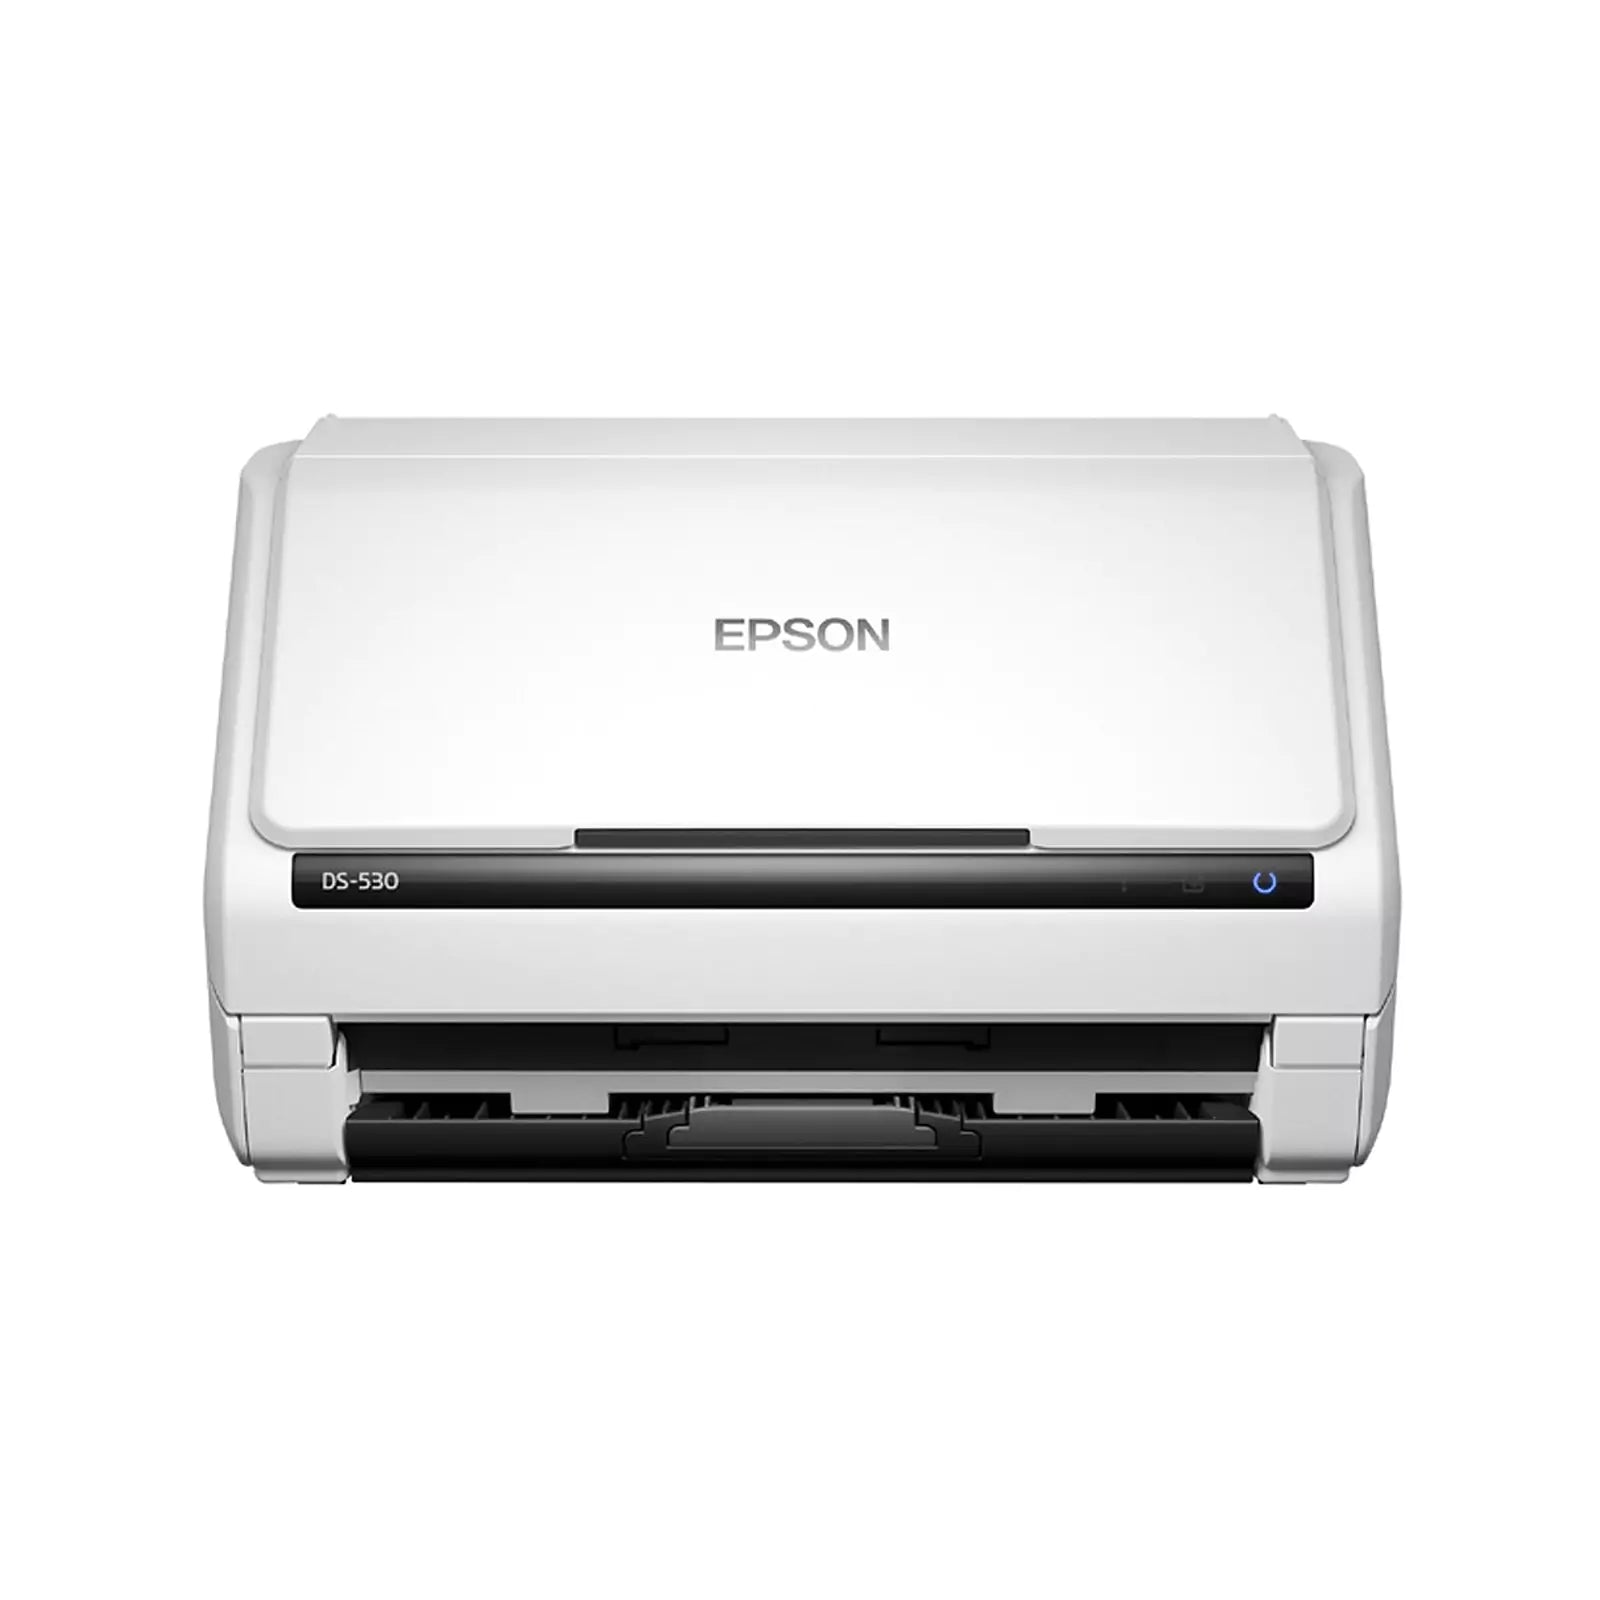 Epson DS-530